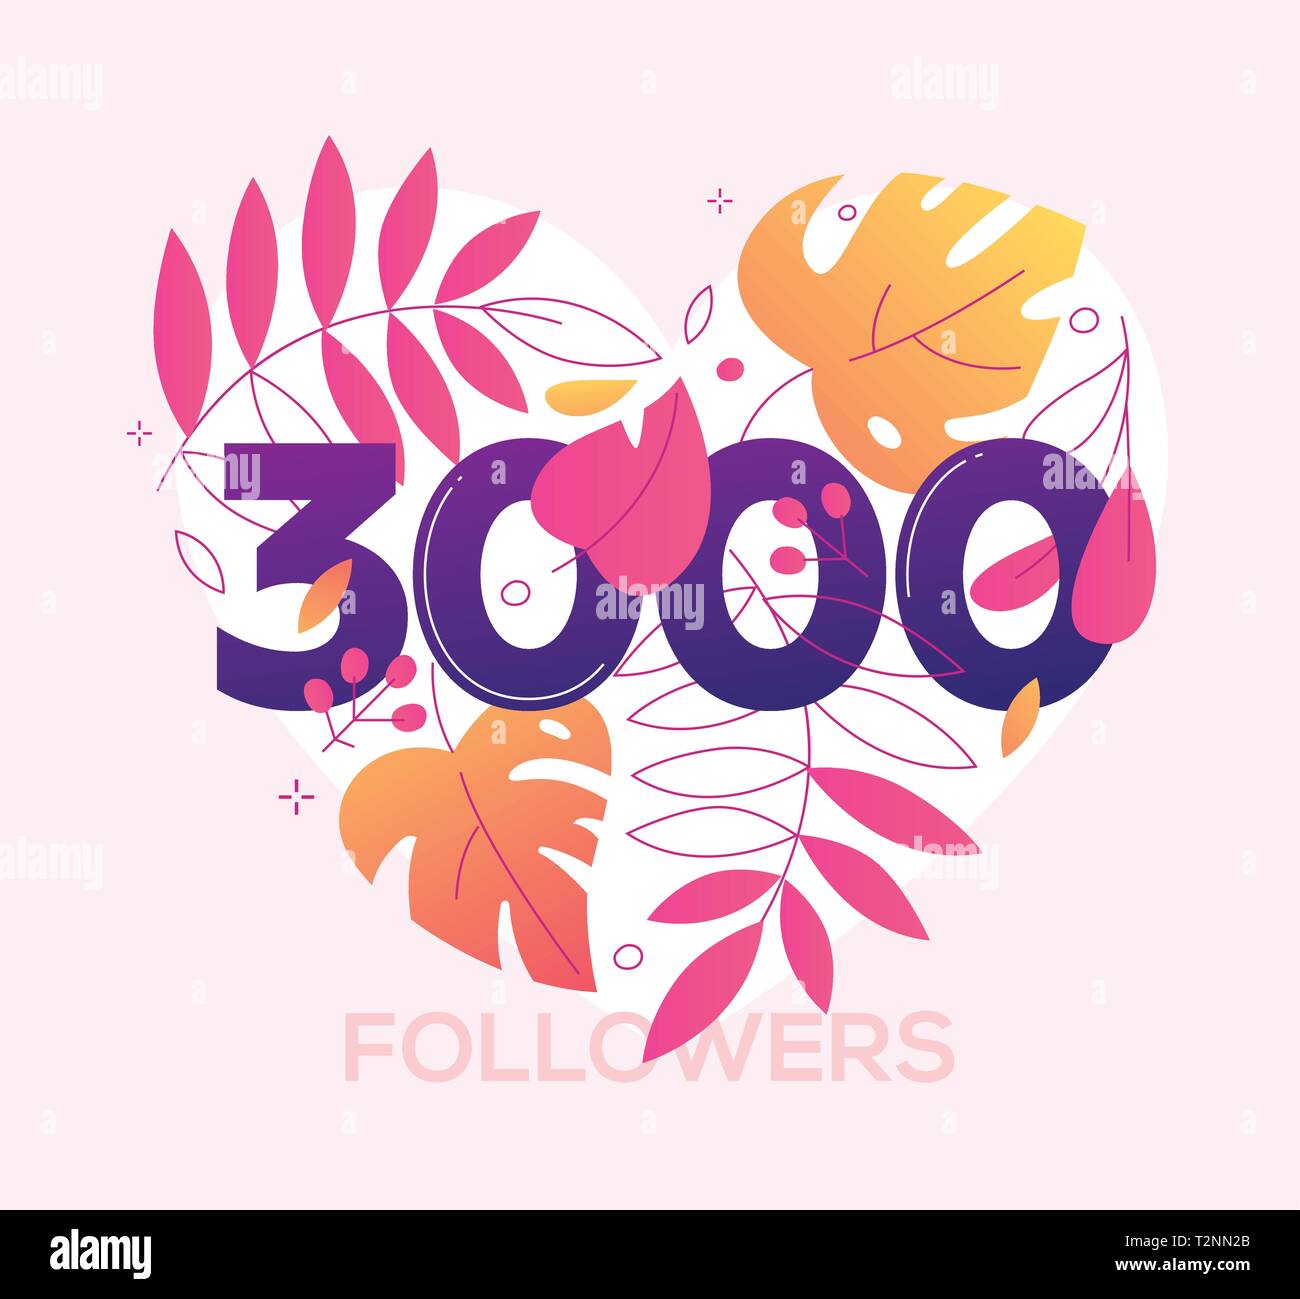 3000 followers banner - une télévision moderne style design illustration avec une composition florale, numéro trois des milliers en forme de coeur. Fleurs, feuilles, herba Illustration de Vecteur